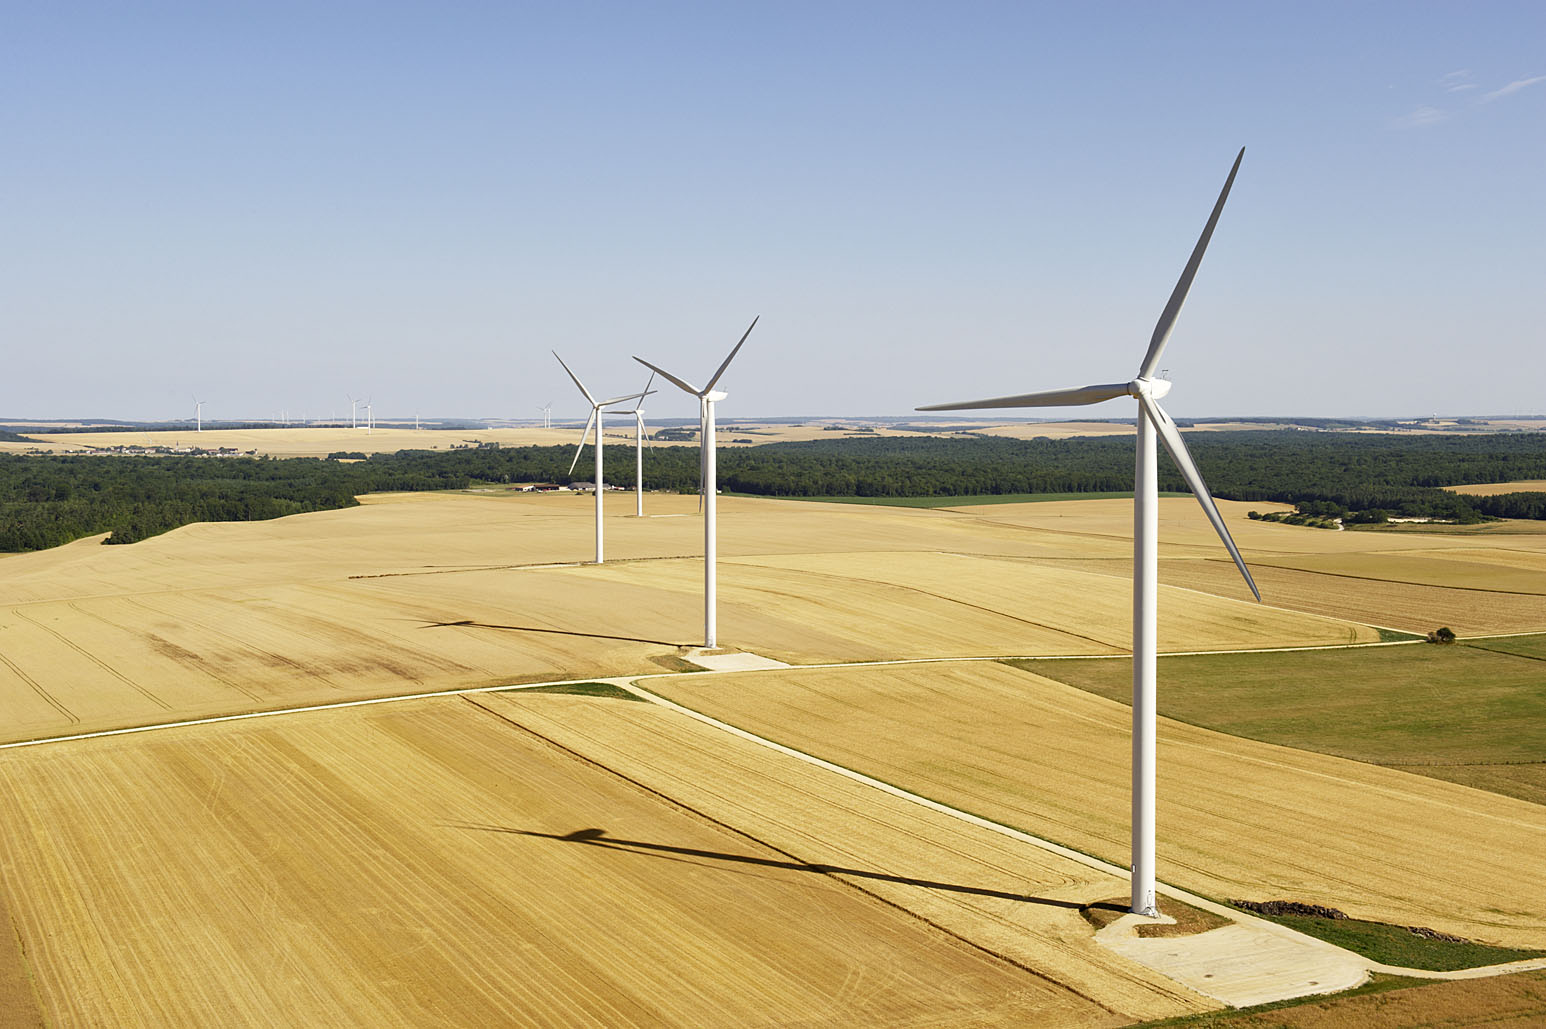 24 éoliennes Senvion  pour le projet Antilope dans les Hauts-de-France